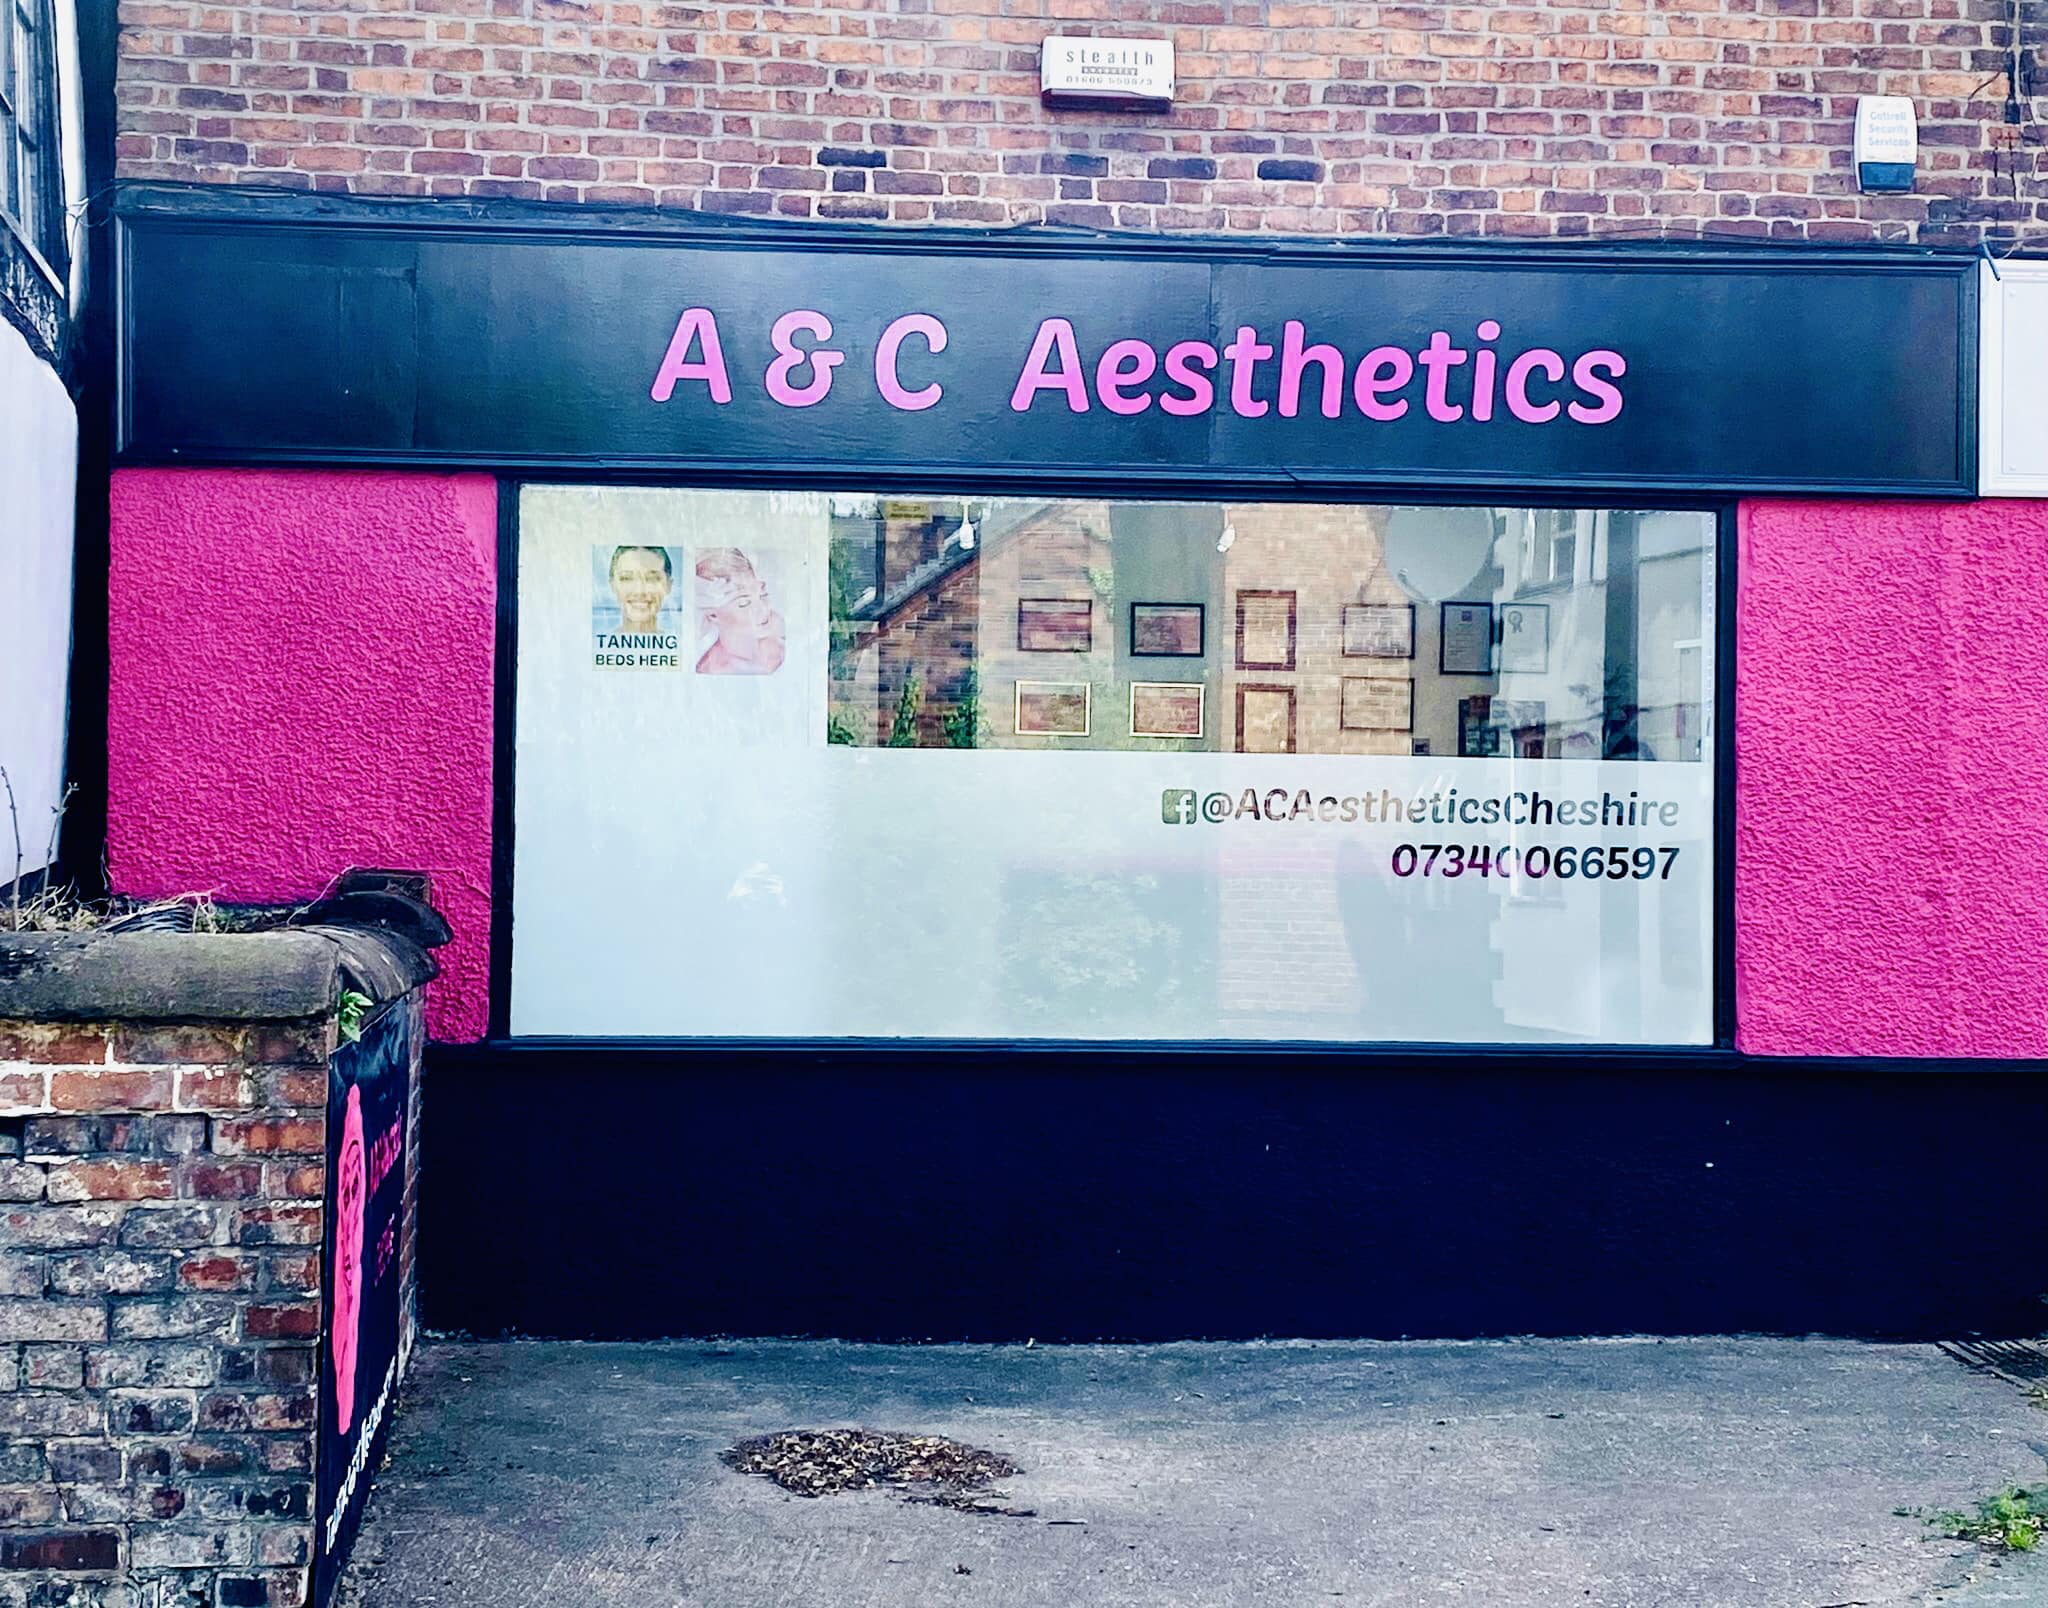 A & C Aesthetics Cheshire